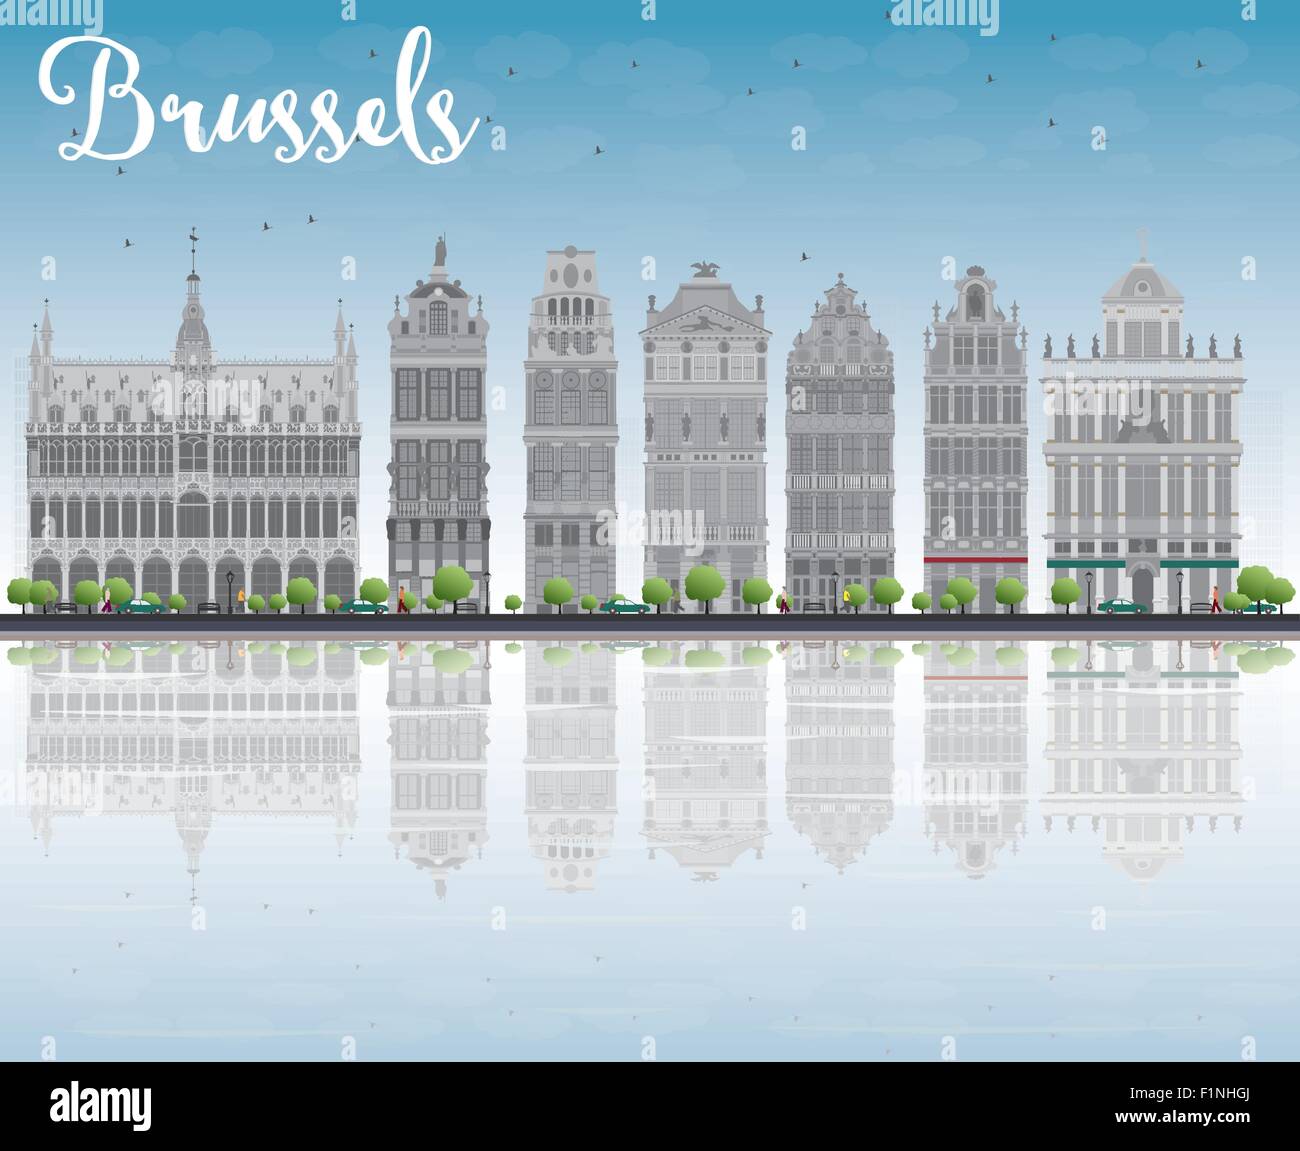 Bruxelles skyline con ornati edifici della Grand Place e riflessioni. Illustrazione Vettoriale Illustrazione Vettoriale